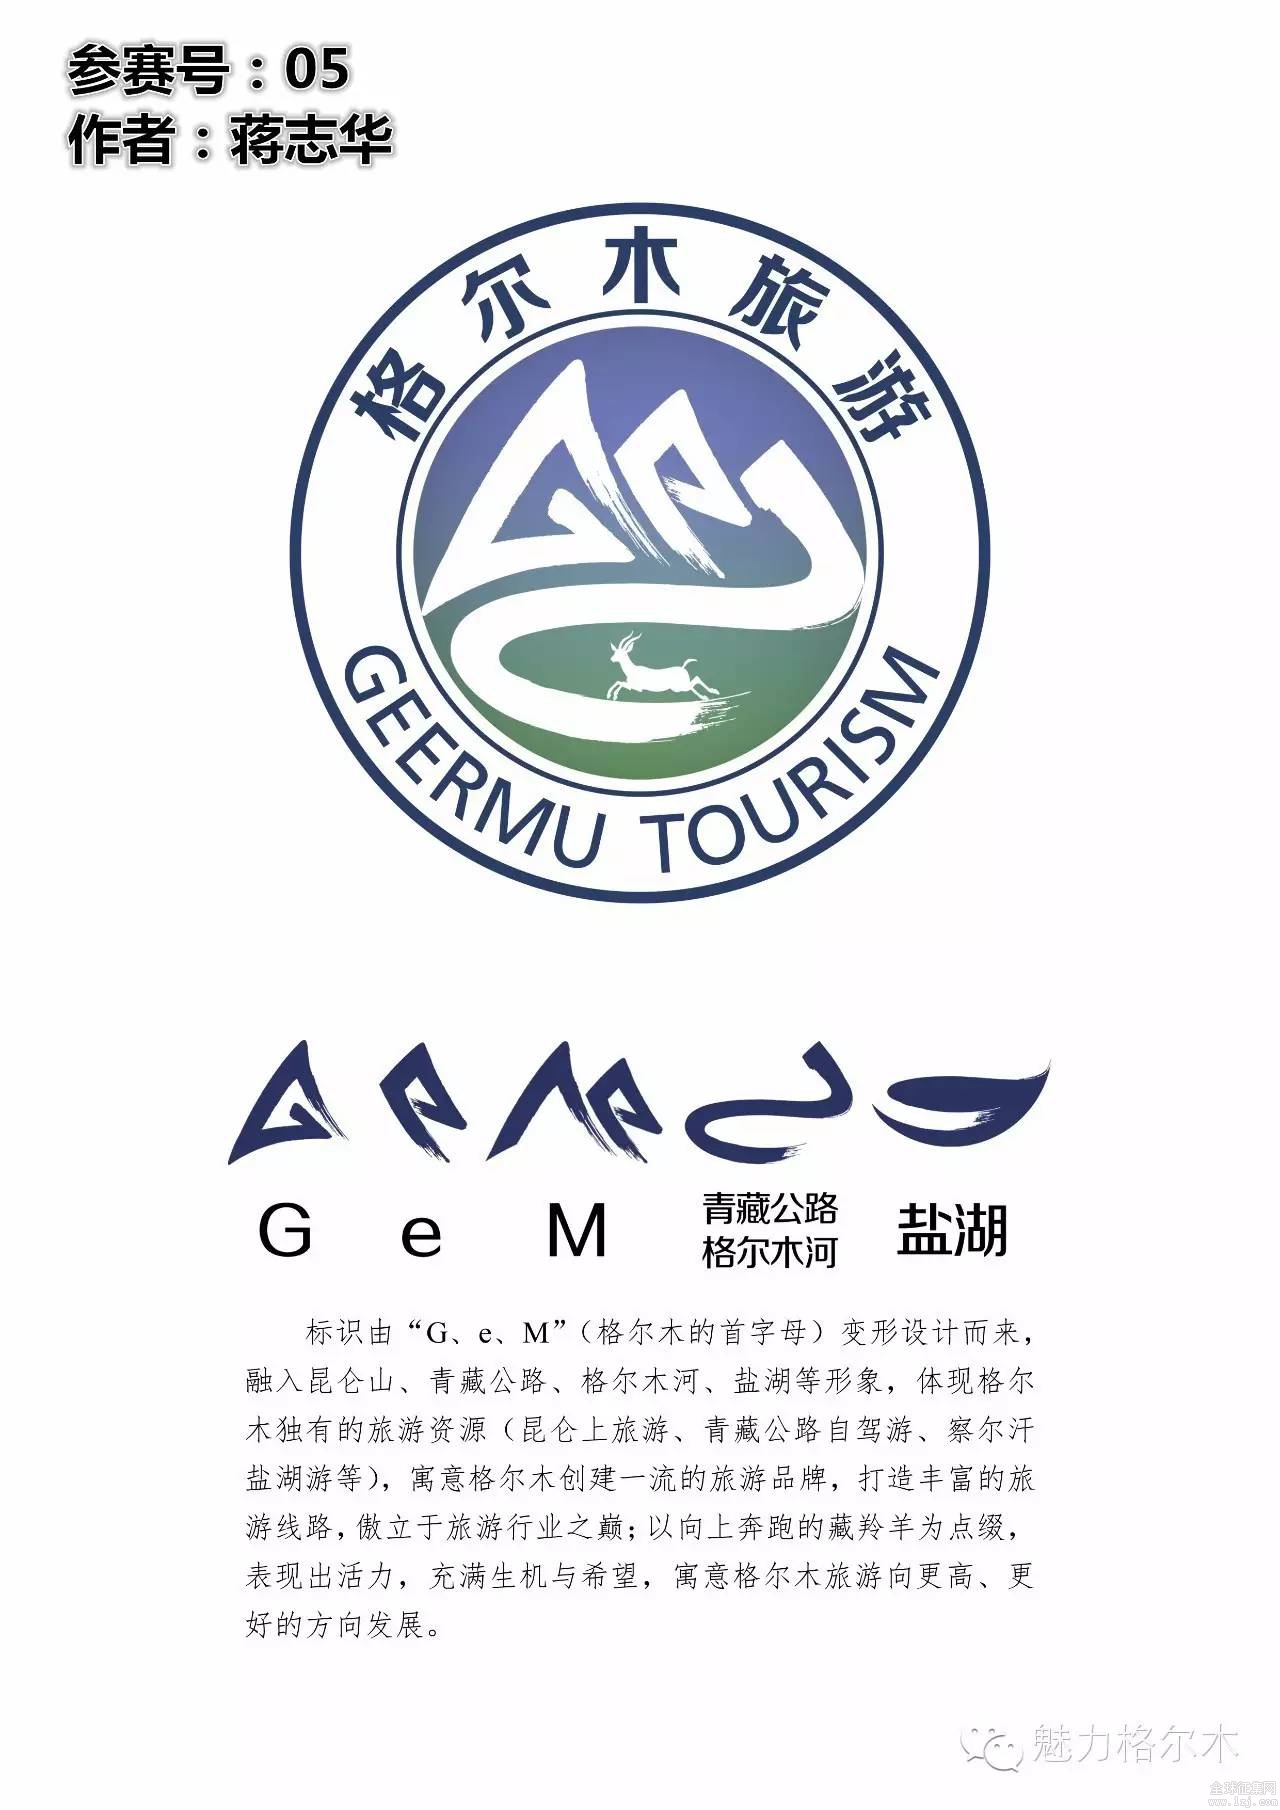 格尔木旅游形象标识logo征集进入评审阶段